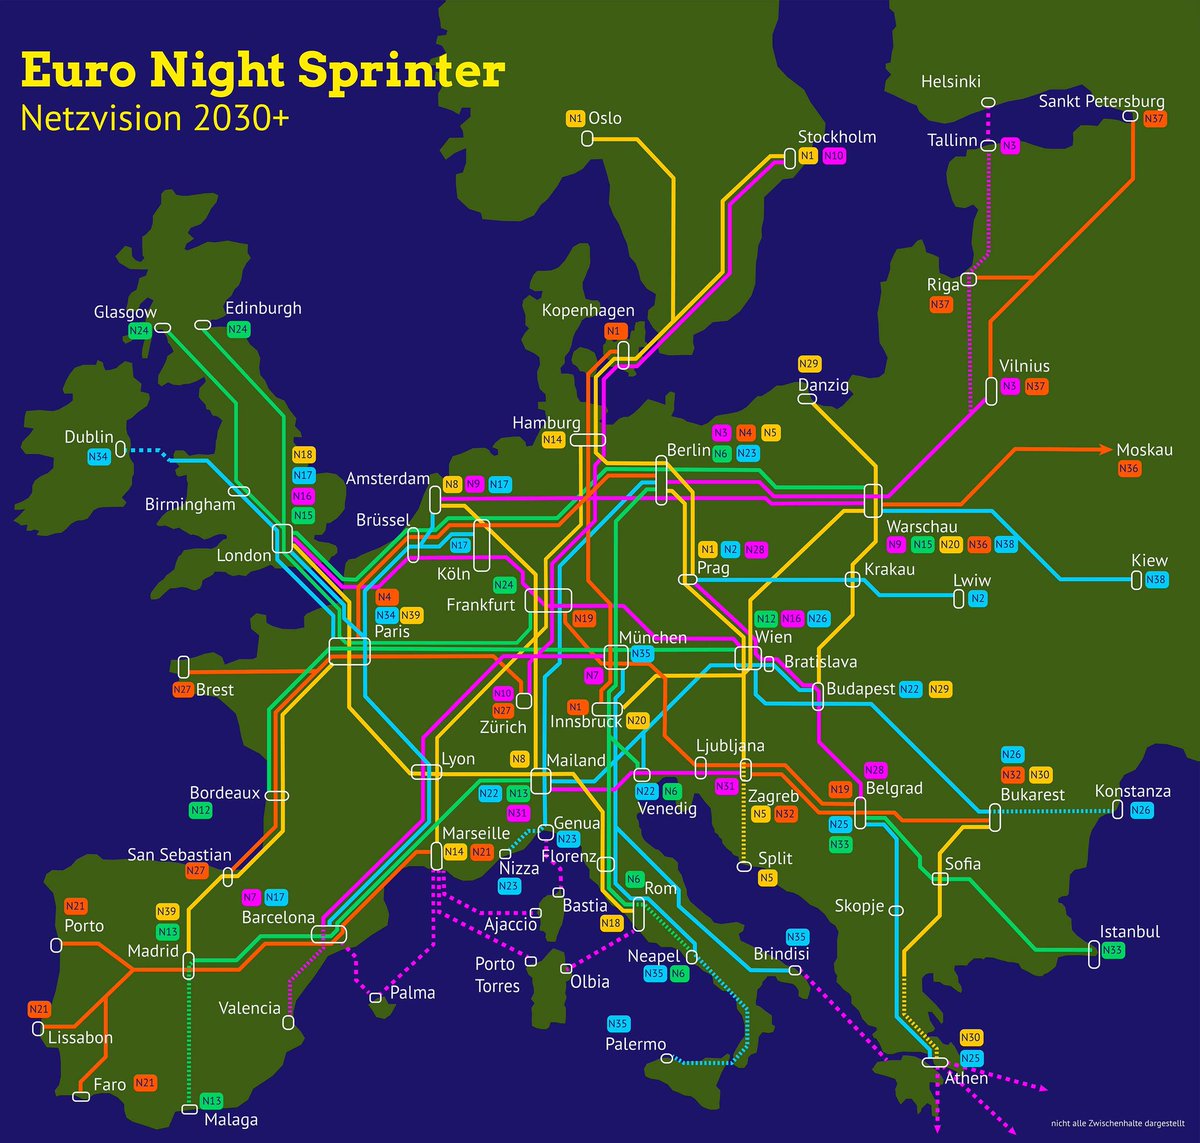 🇩🇪🚆 Un grupo de candidatos de Los Verdes propone crear una red de trenes nocturnos que conecte 200 ciudades europeas mediante 40 lineas.

La idea: que moverse en tren por Europa sea tan fácil como volar.

¿Os imagináis? 😍

(Podéis leer más (en 🇬🇧) aquí: bahnstrategie.matthias-gastel.de/nachtzug.php)